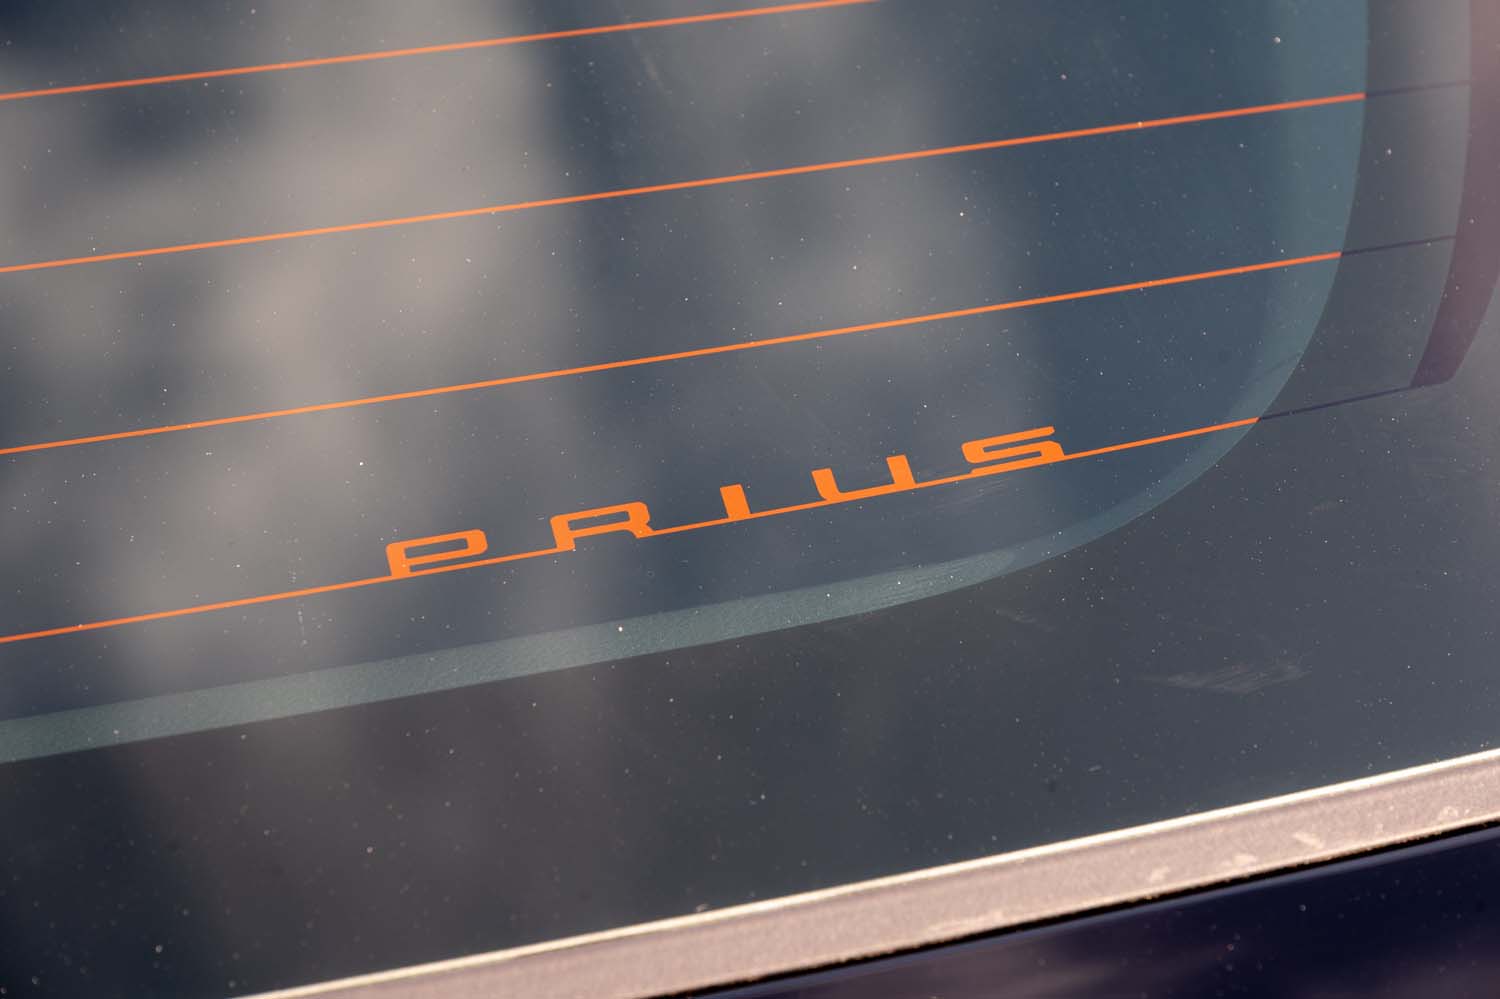 リアの熱線に仕込まれた「PRIUS」ロゴ。こうしたあしらいが車両全体で二十数カ所隠されているらしいが、限られた取材時間ではすべてを見つけることはできなかった。